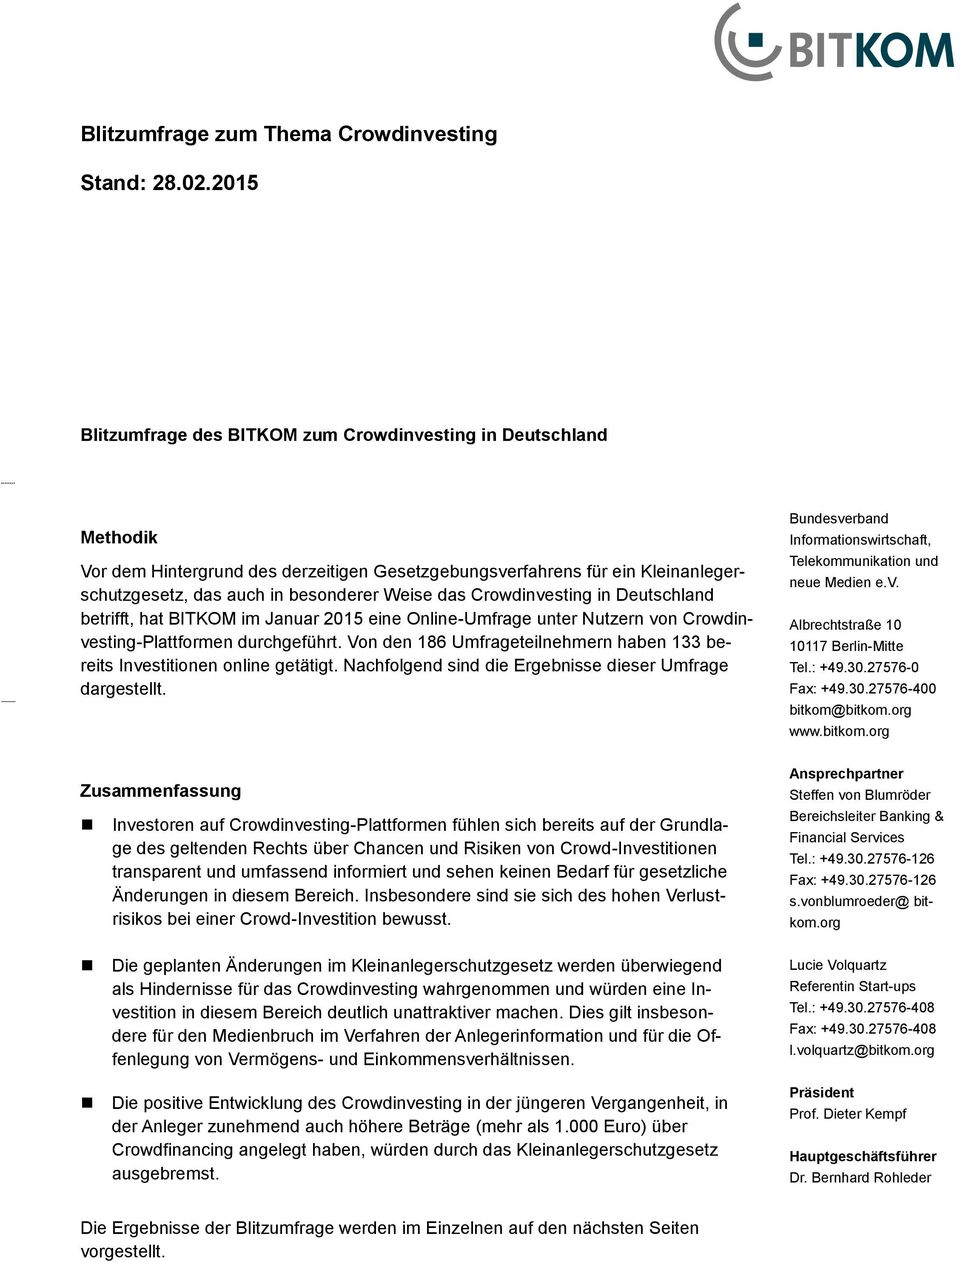 Crowdinvesting in Deutschland betrifft, hat BITKOM im Januar 2015 eine Online-Umfrage unter Nutzern von Crowdinvesting-Plattformen durchgeführt.